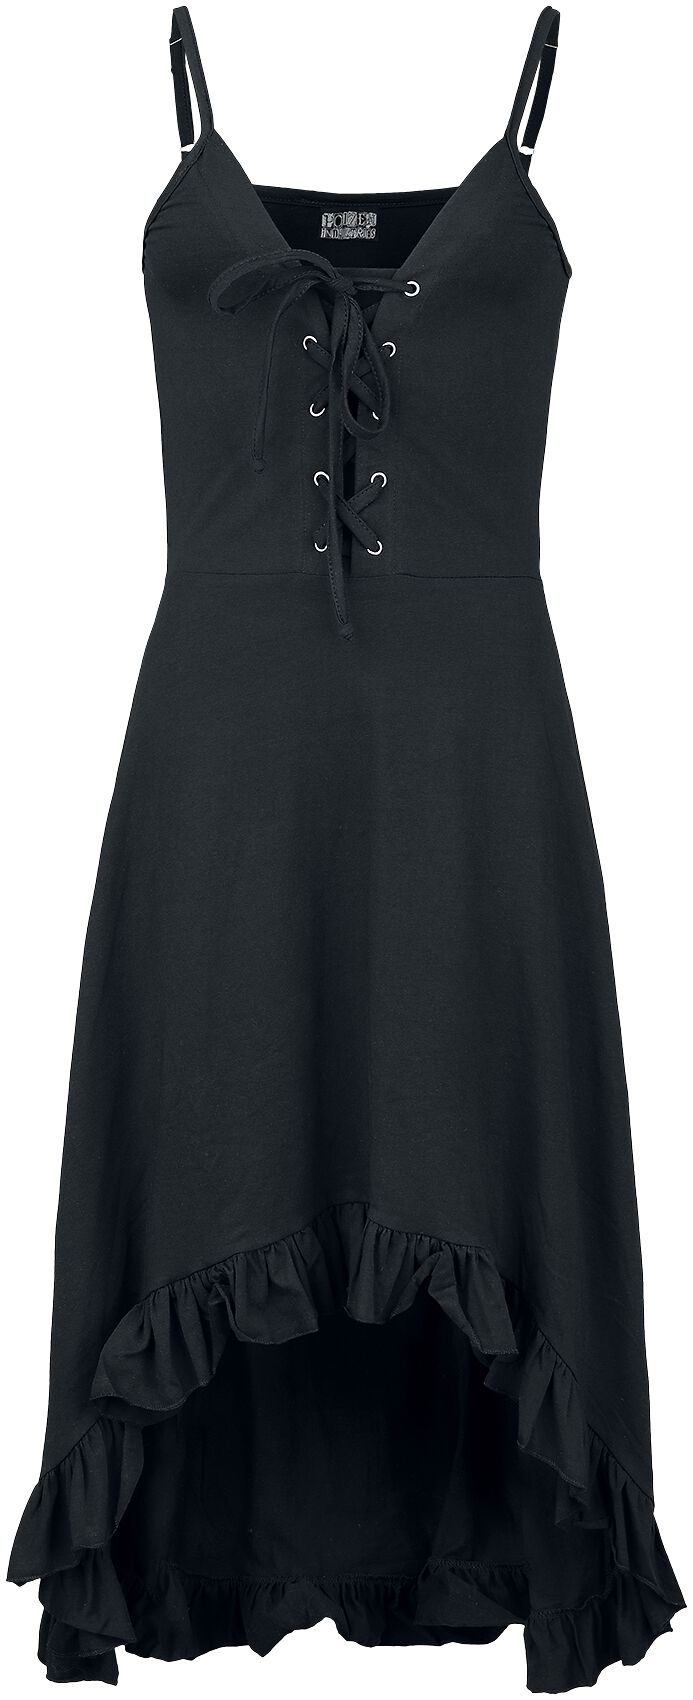 Innocent - Gothic Kurzes Kleid - Astraea Dress - S bis 4XL - für Damen - Größe M - schwarz